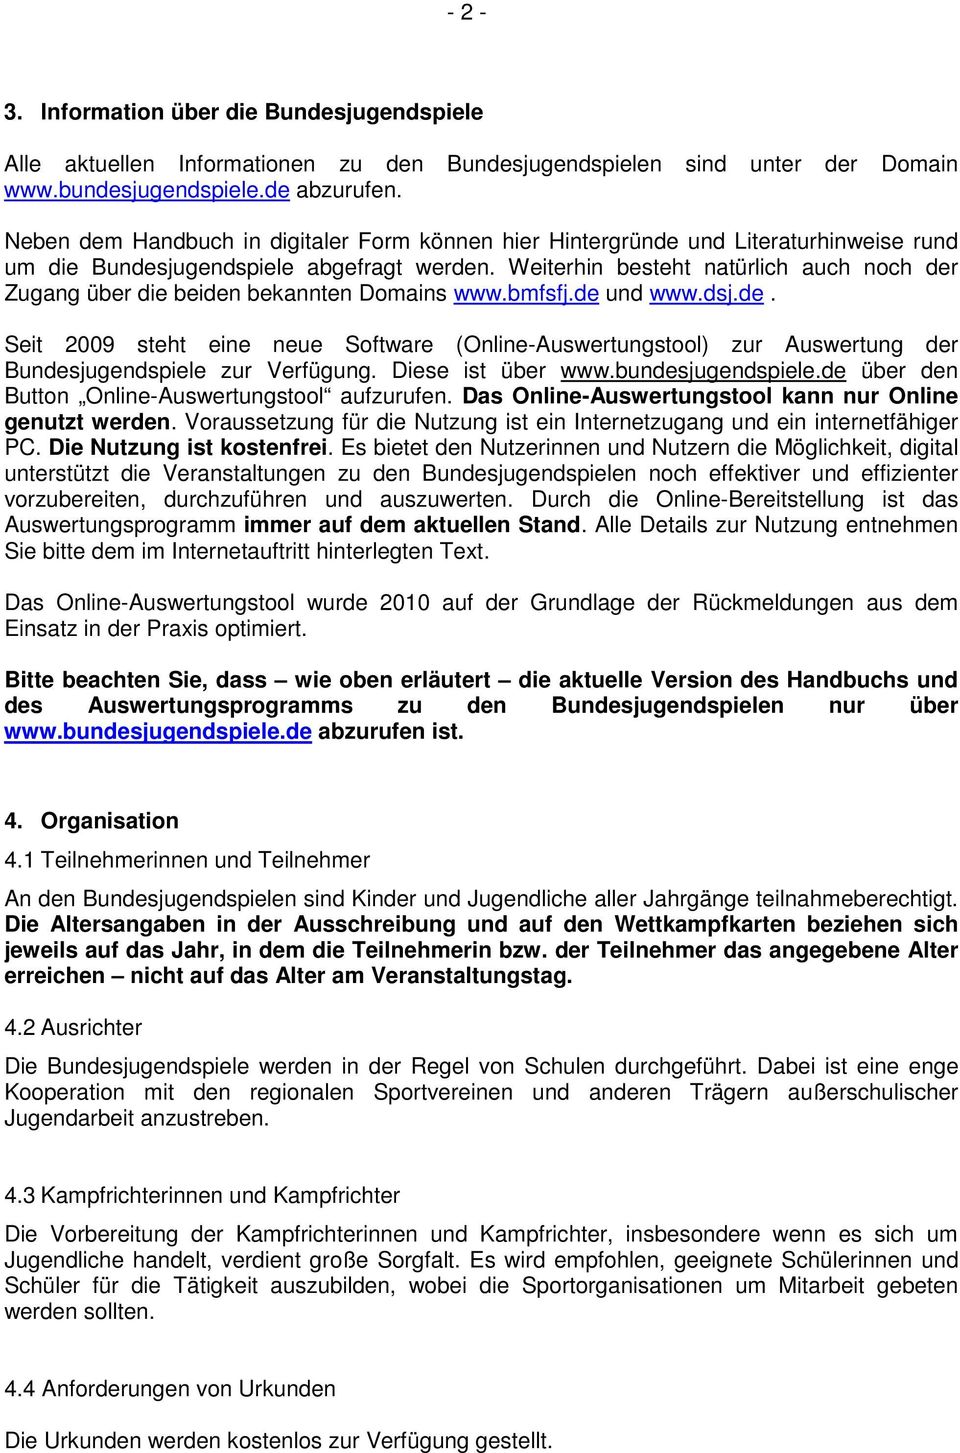 Weiterhin besteht natürlich auch noch der Zugang über die beiden bekannten Domains www.bmfsfj.de und www.dsj.de. Seit 2009 steht eine neue Software (Online-Auswertungstool) zur Auswertung der Bundesjugendspiele zur Verfügung.